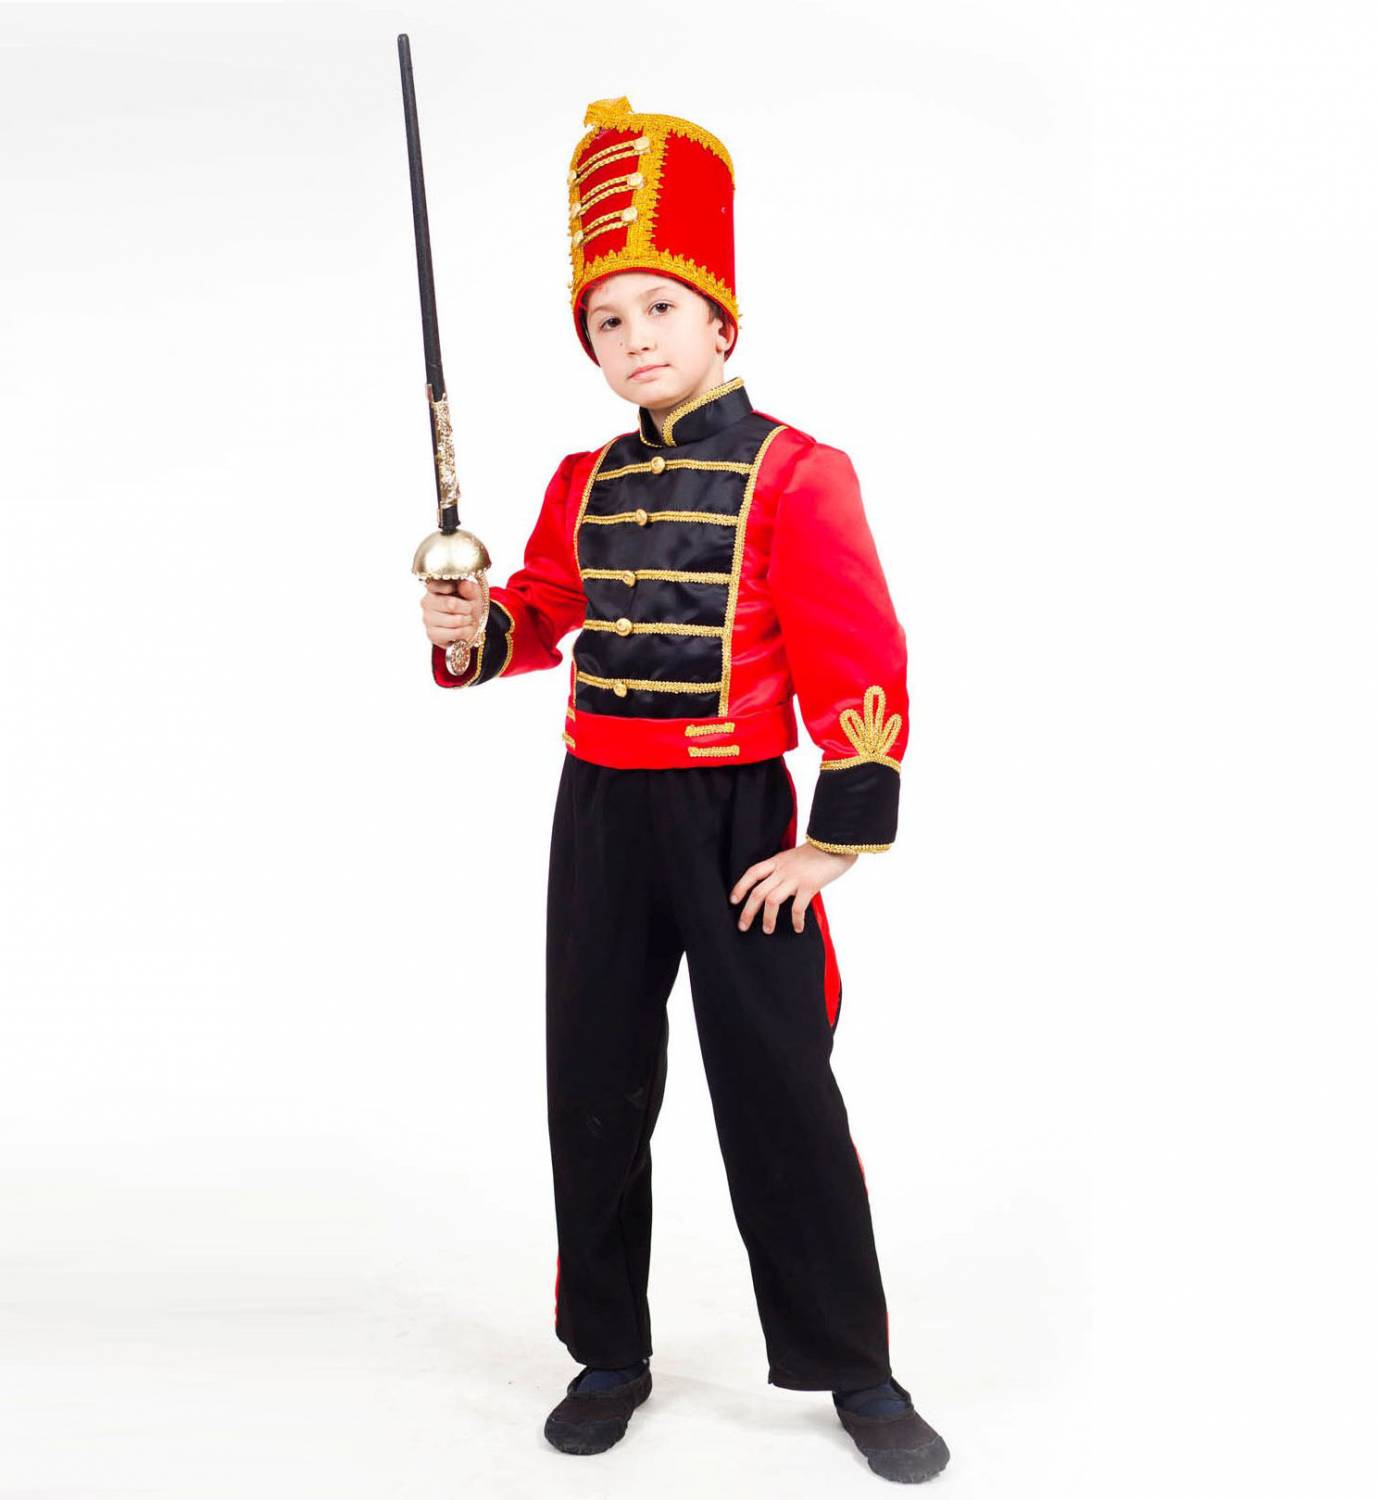 Костюм гусара, детский новогодний, карнавальный костюм Гусара, фирмы Шампания, артикул Н68781